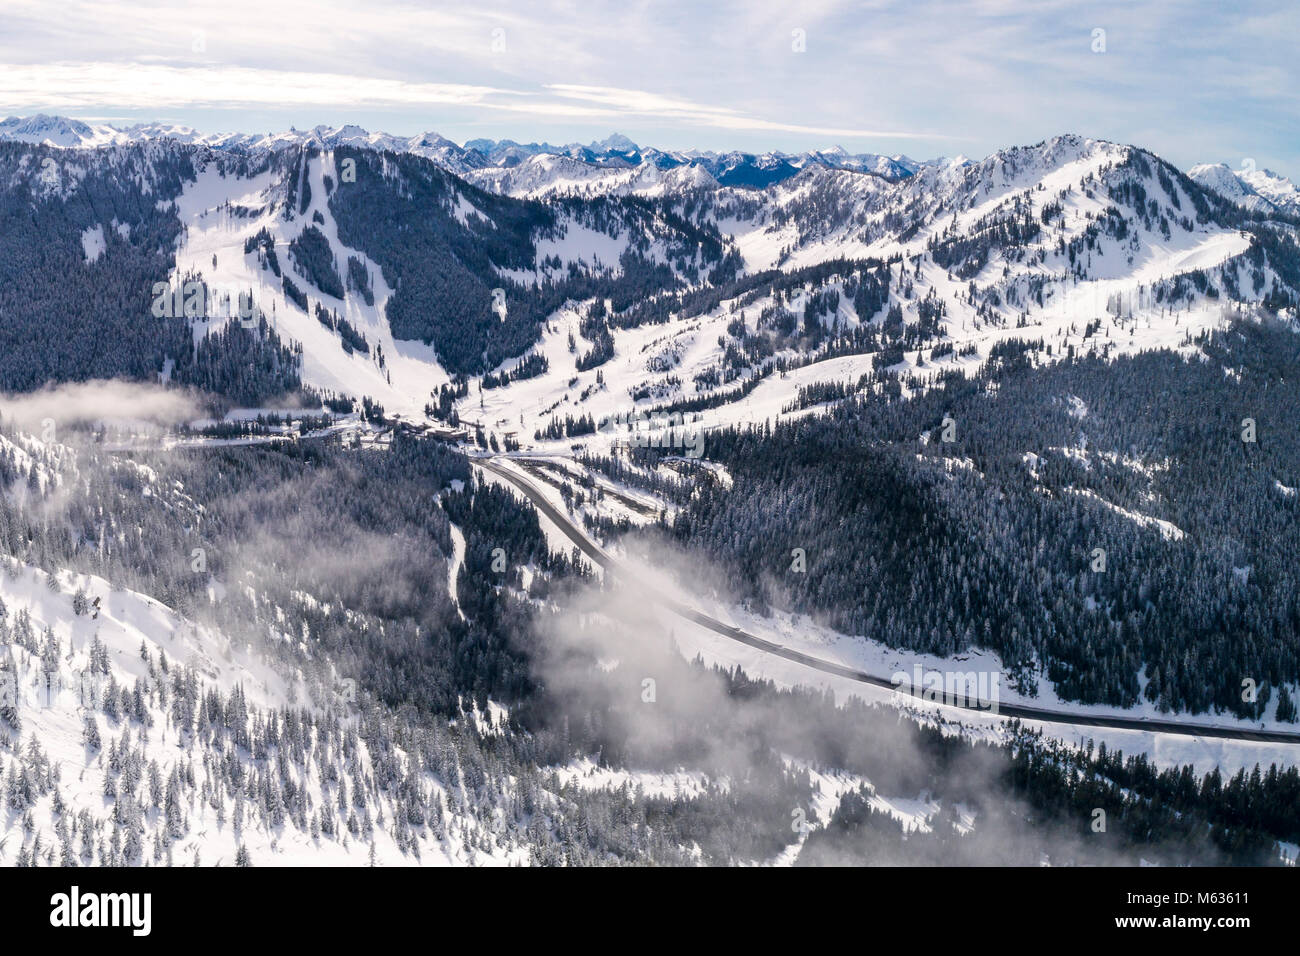 La perspectiva aérea de alta montaña popular para los deportes de acción recreativa de invierno Foto de stock